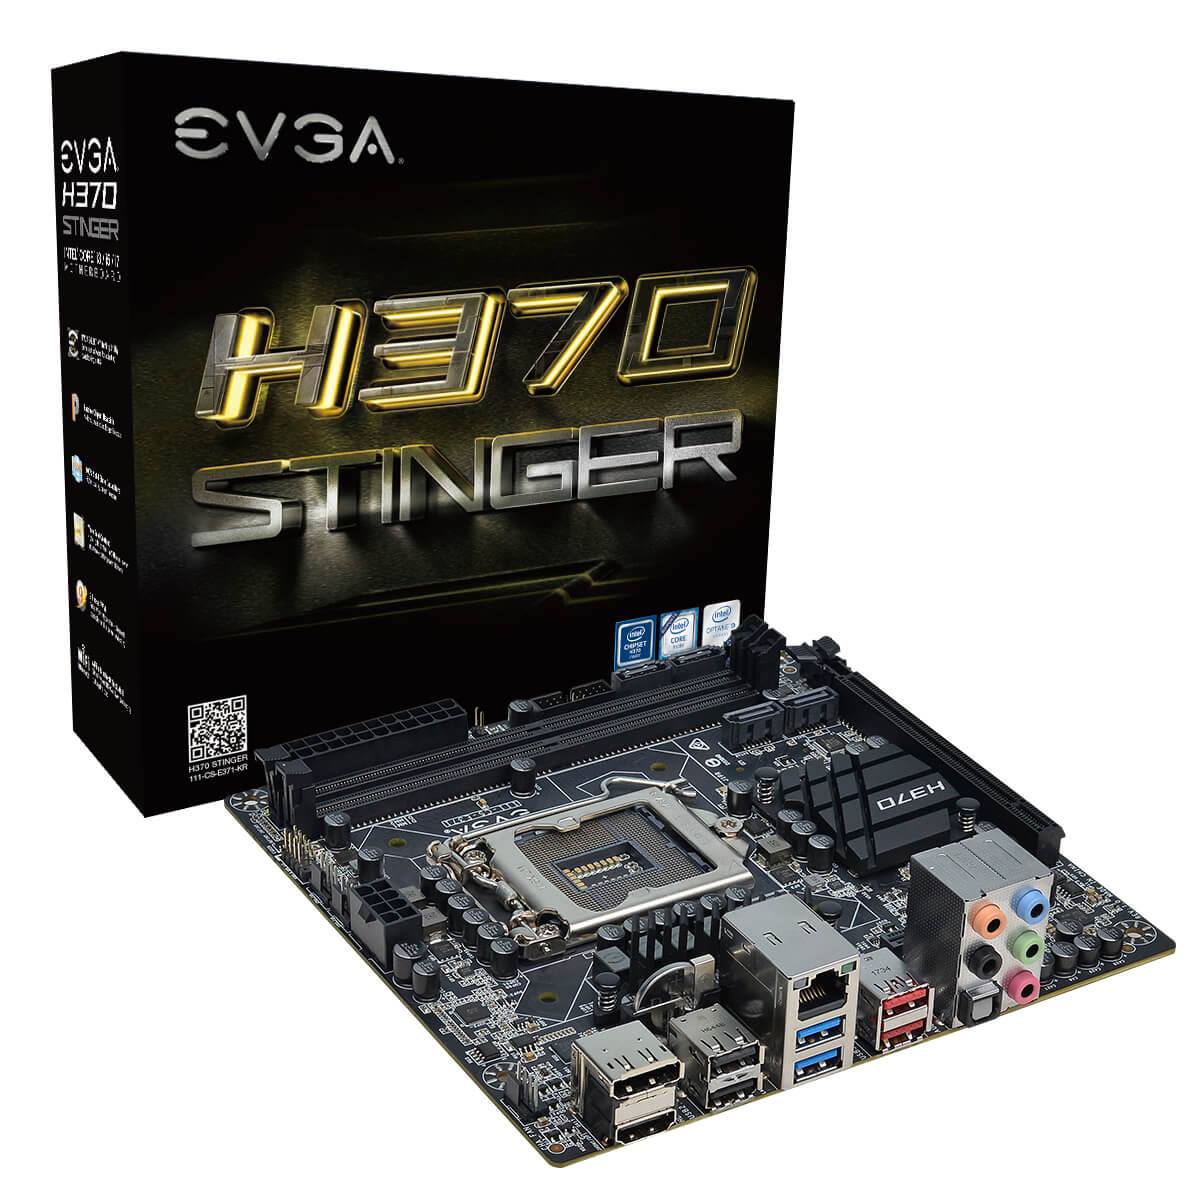 EVGA H370 Stinger motherboard